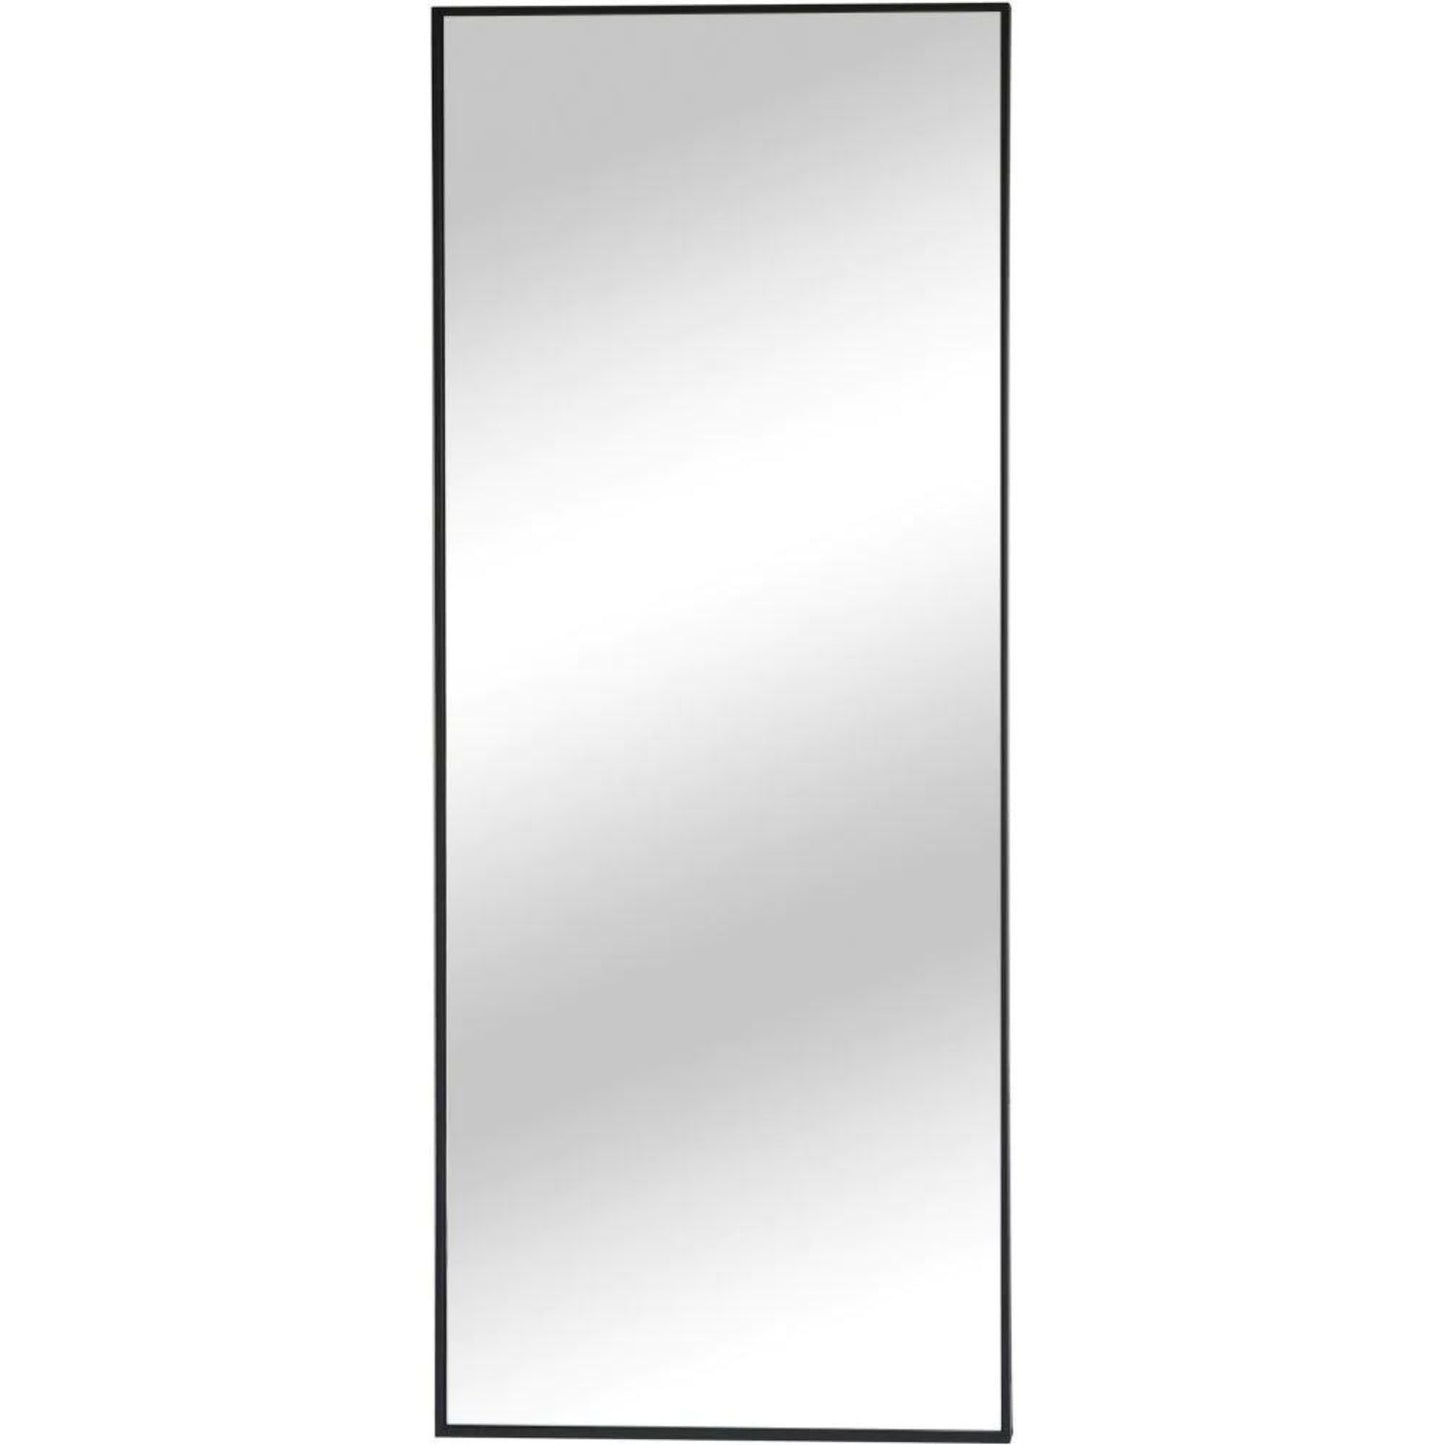 Modern Rectangular Iron Framed Wall Mirror 190x80cm